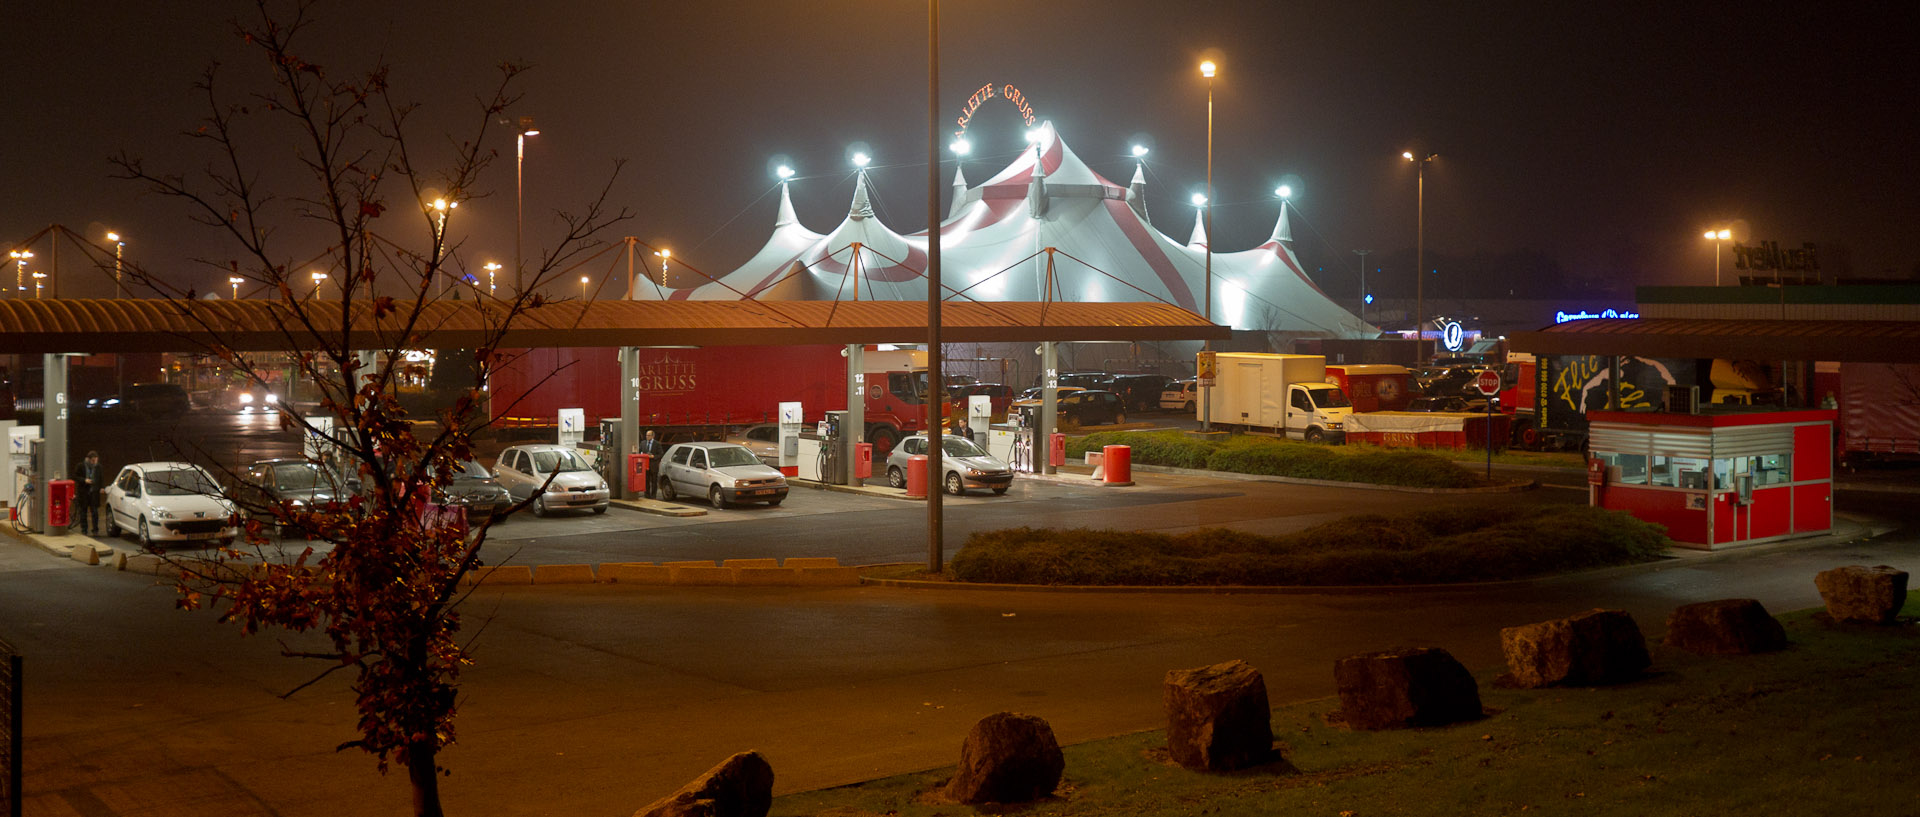 Le cirque Arlette Gruss sur le parking du centre commercial Carrefour, à Wasquehal.